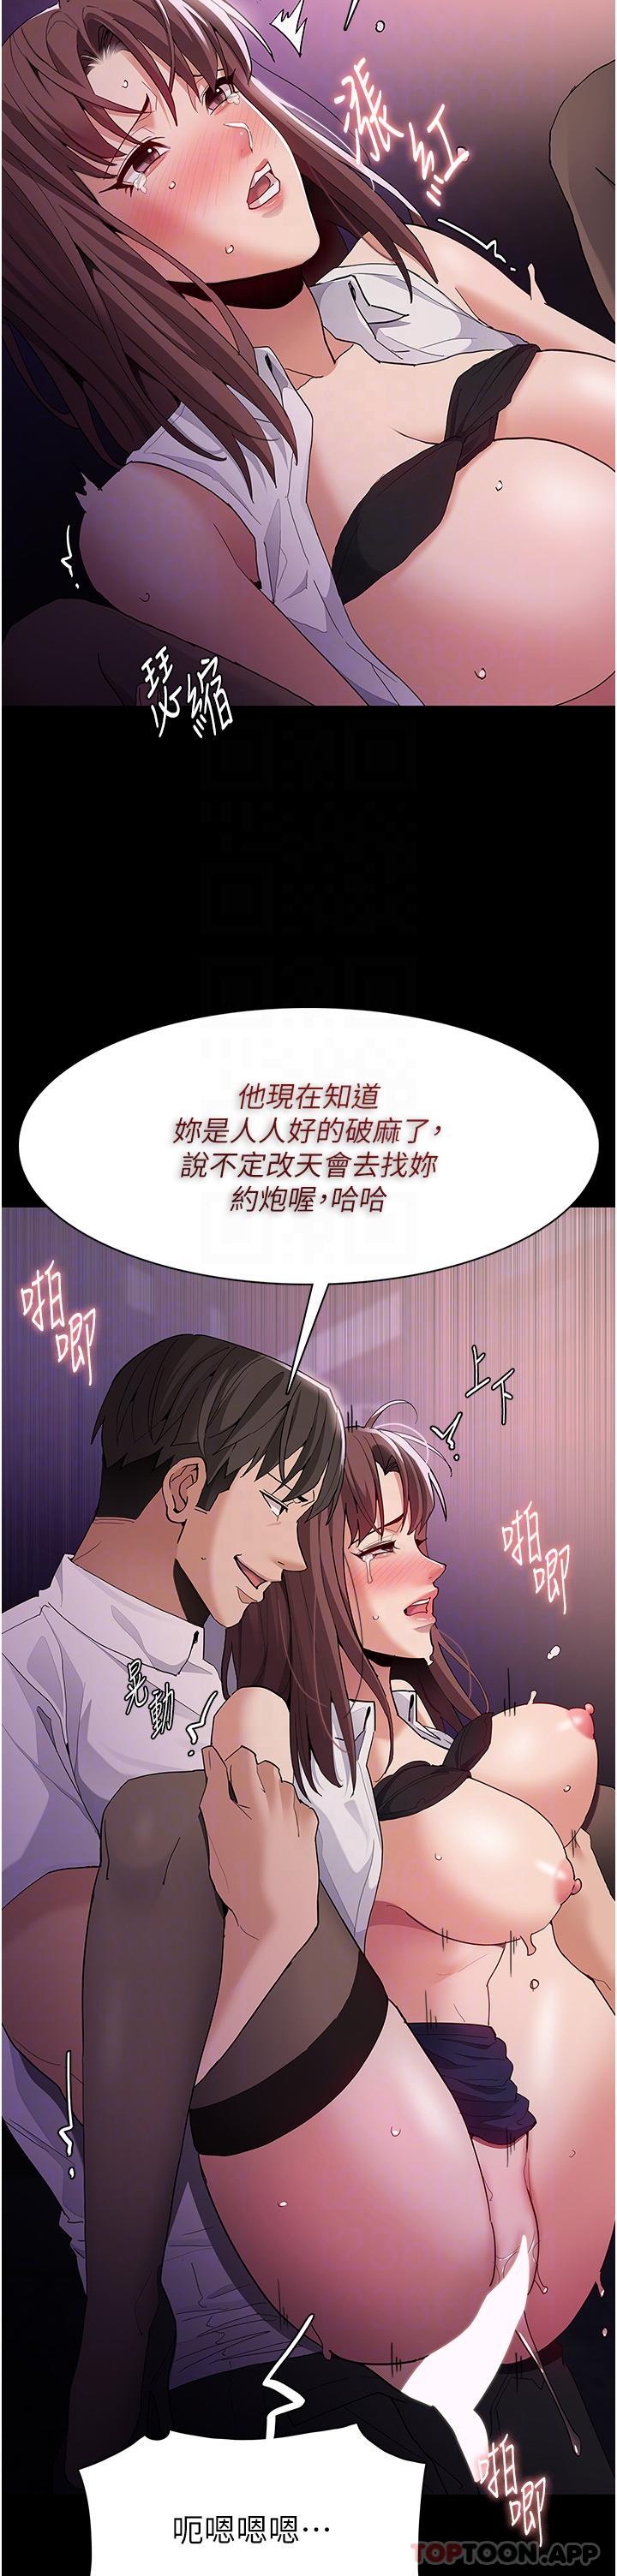 韩国污漫画 癡漢成癮 第39话-补教界「性」坛之光 29